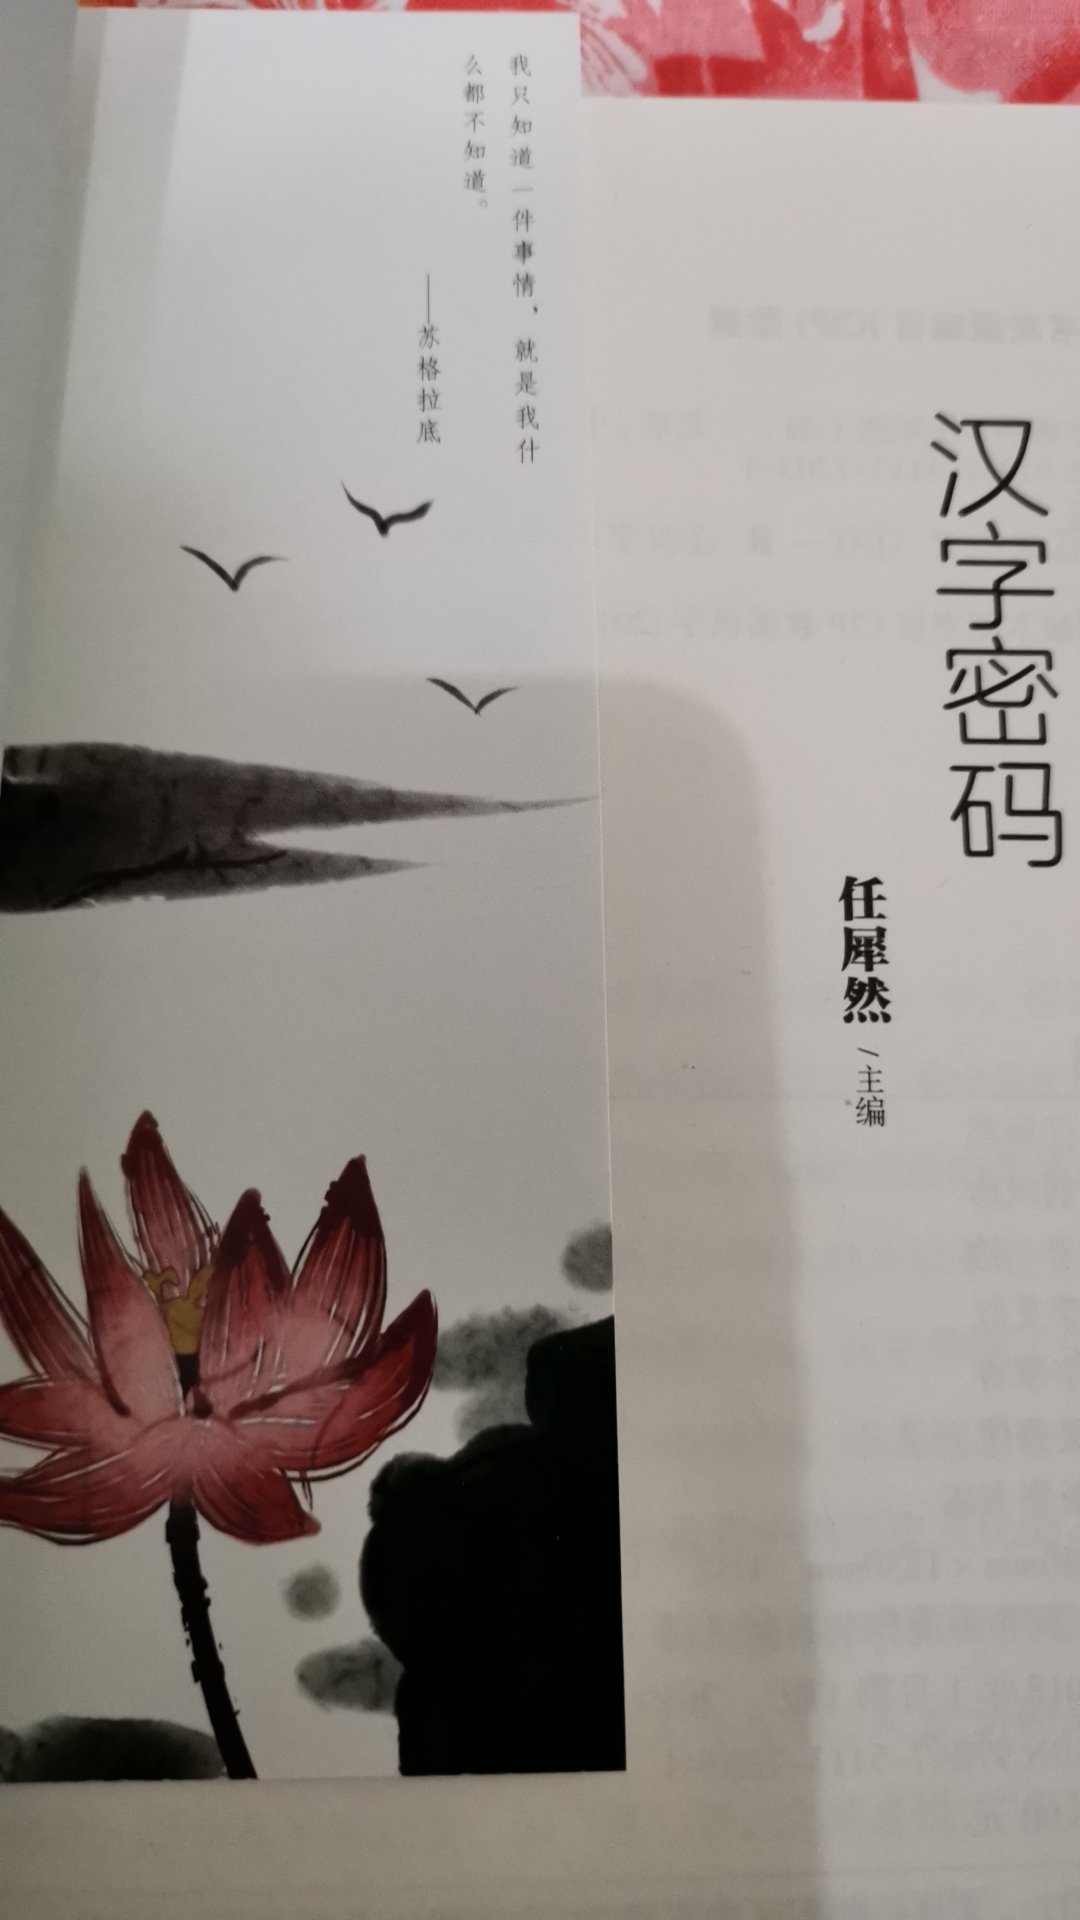 讲述每个字的起源和演变的详细过程，中国汉字的博大精深延绵数千年，本书能更好的让人了解中国的文化。